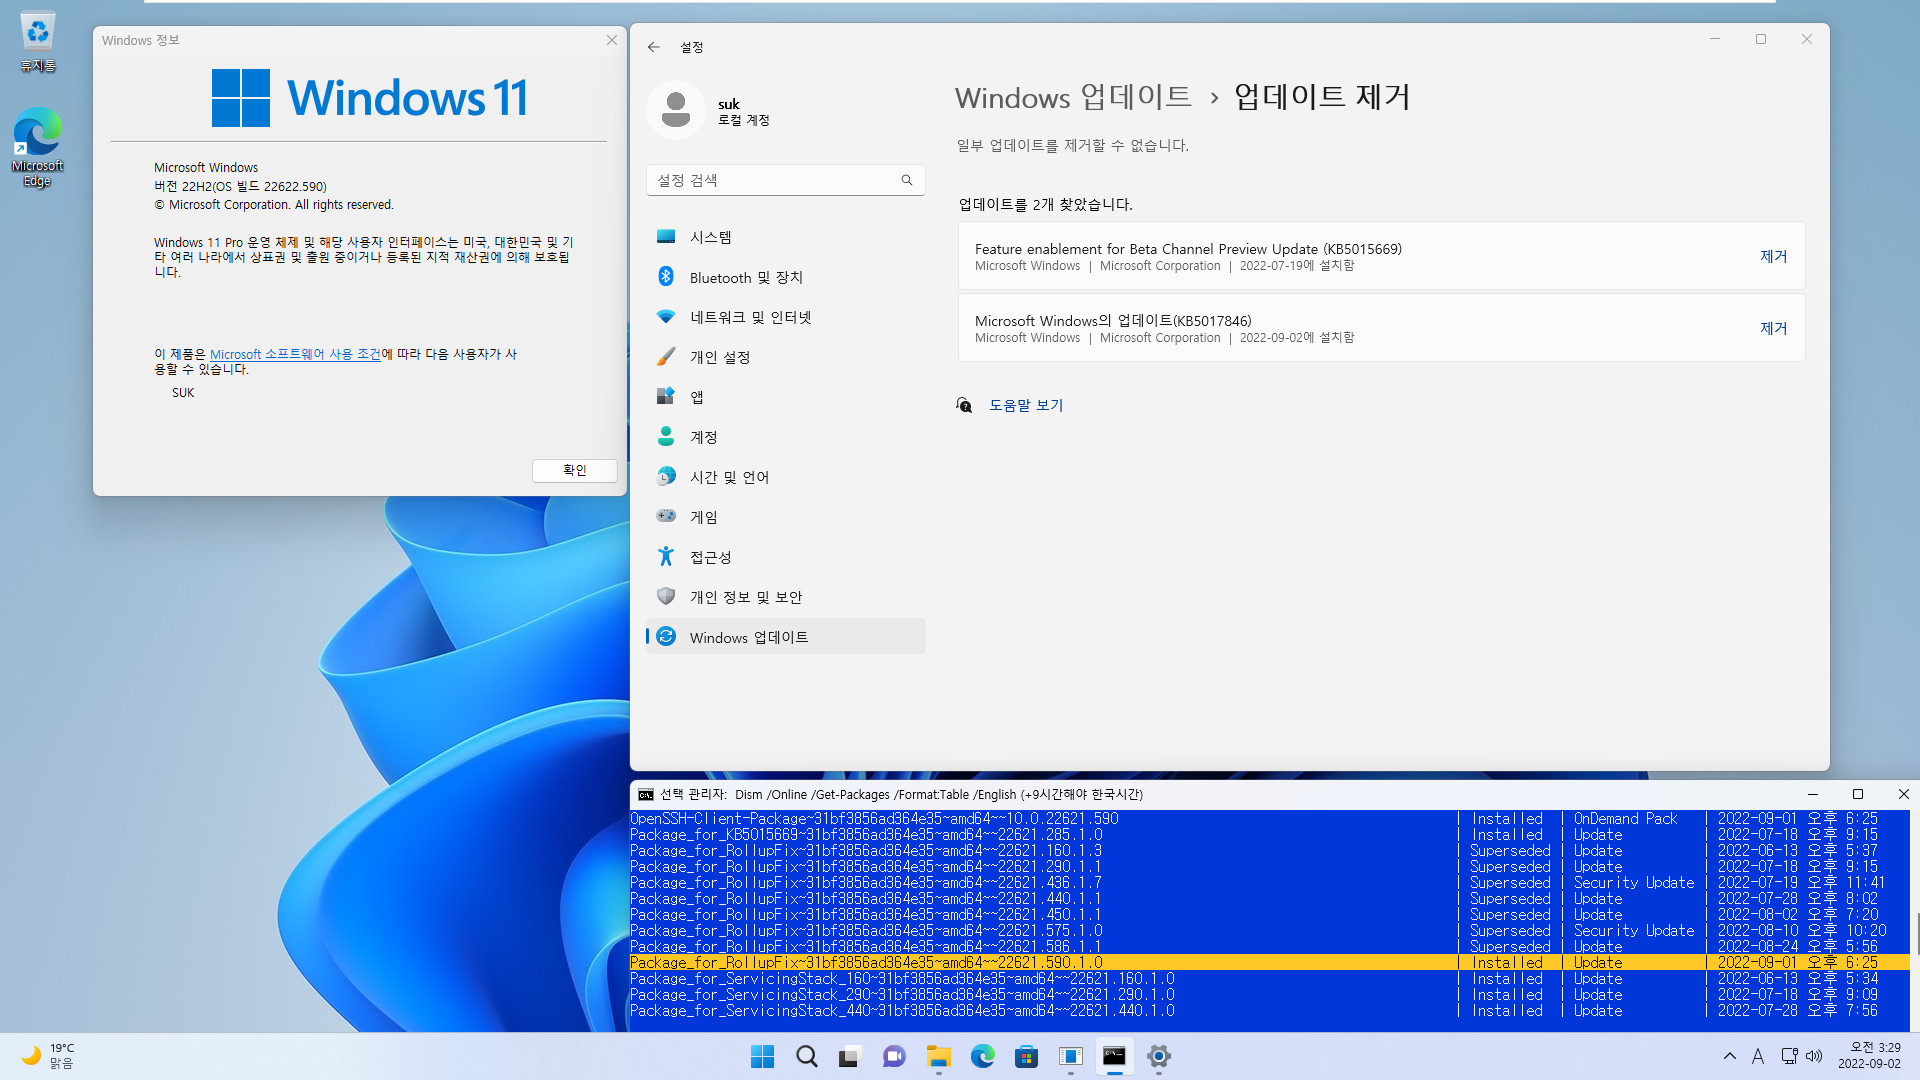 2022-09-02 금요일 - 베타 채널 - Windows 11 버전 22H2, 빌드 22622.590 + 22621.590 - 누적 업데이트 KB5017846 - vmware에 설치 테스트 2022-09-02_032906.jpg